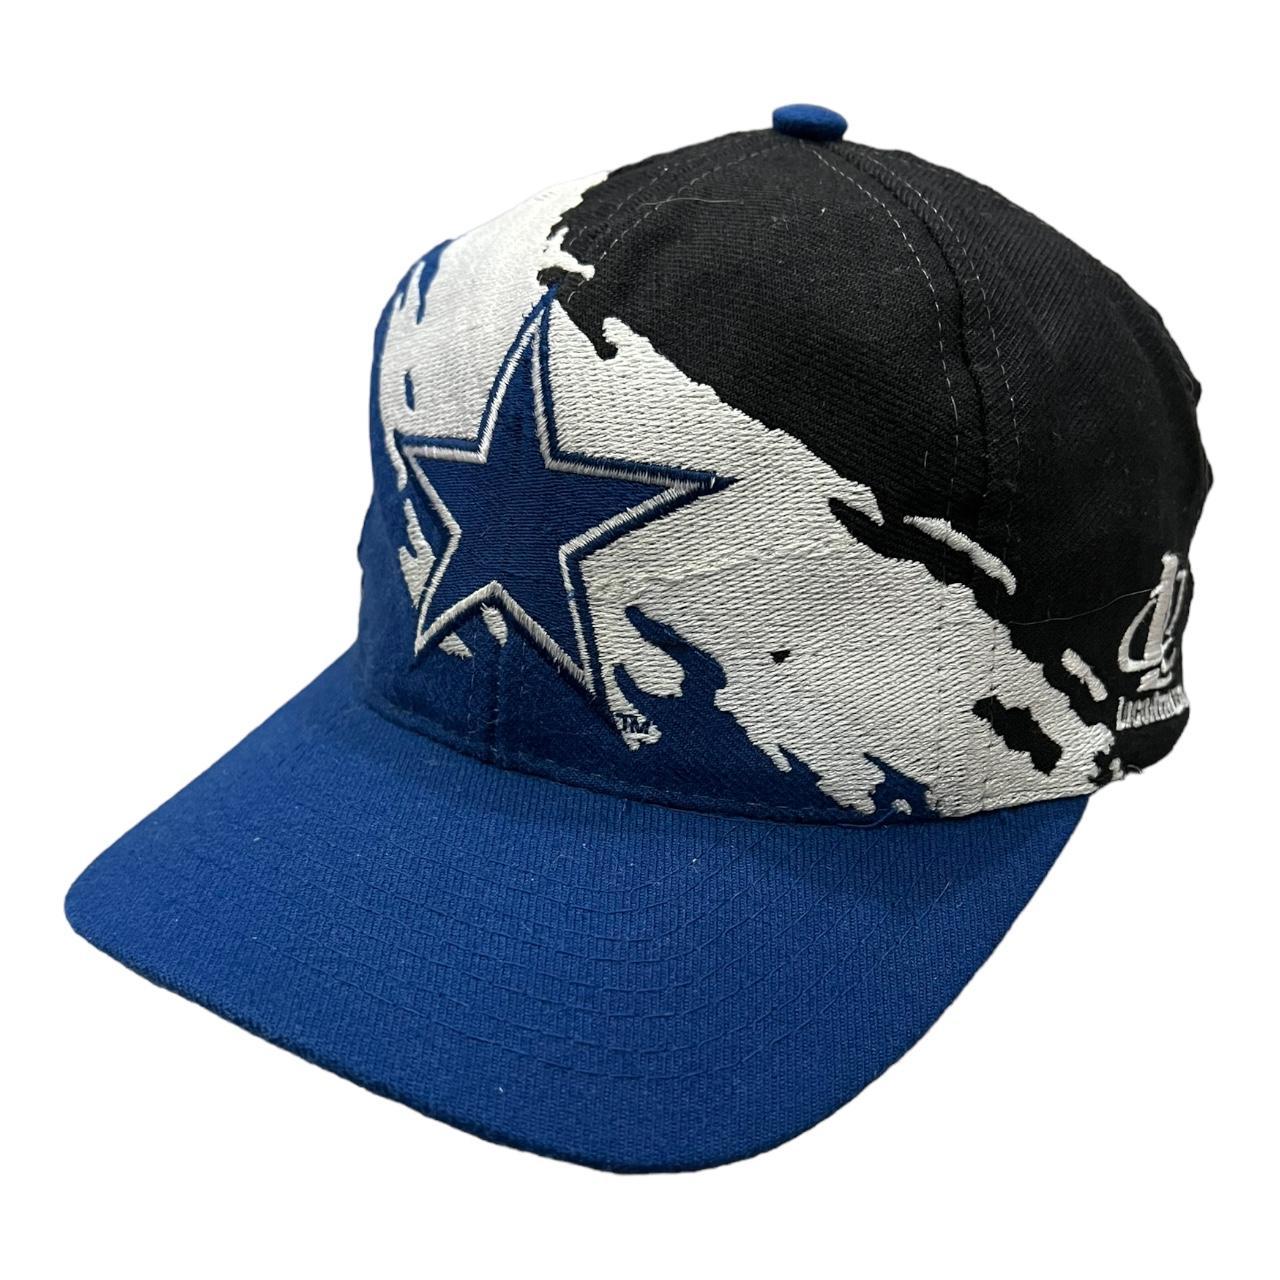 Vintage Dallas Cowboys 90's Logo Athletic Splash... - Depop